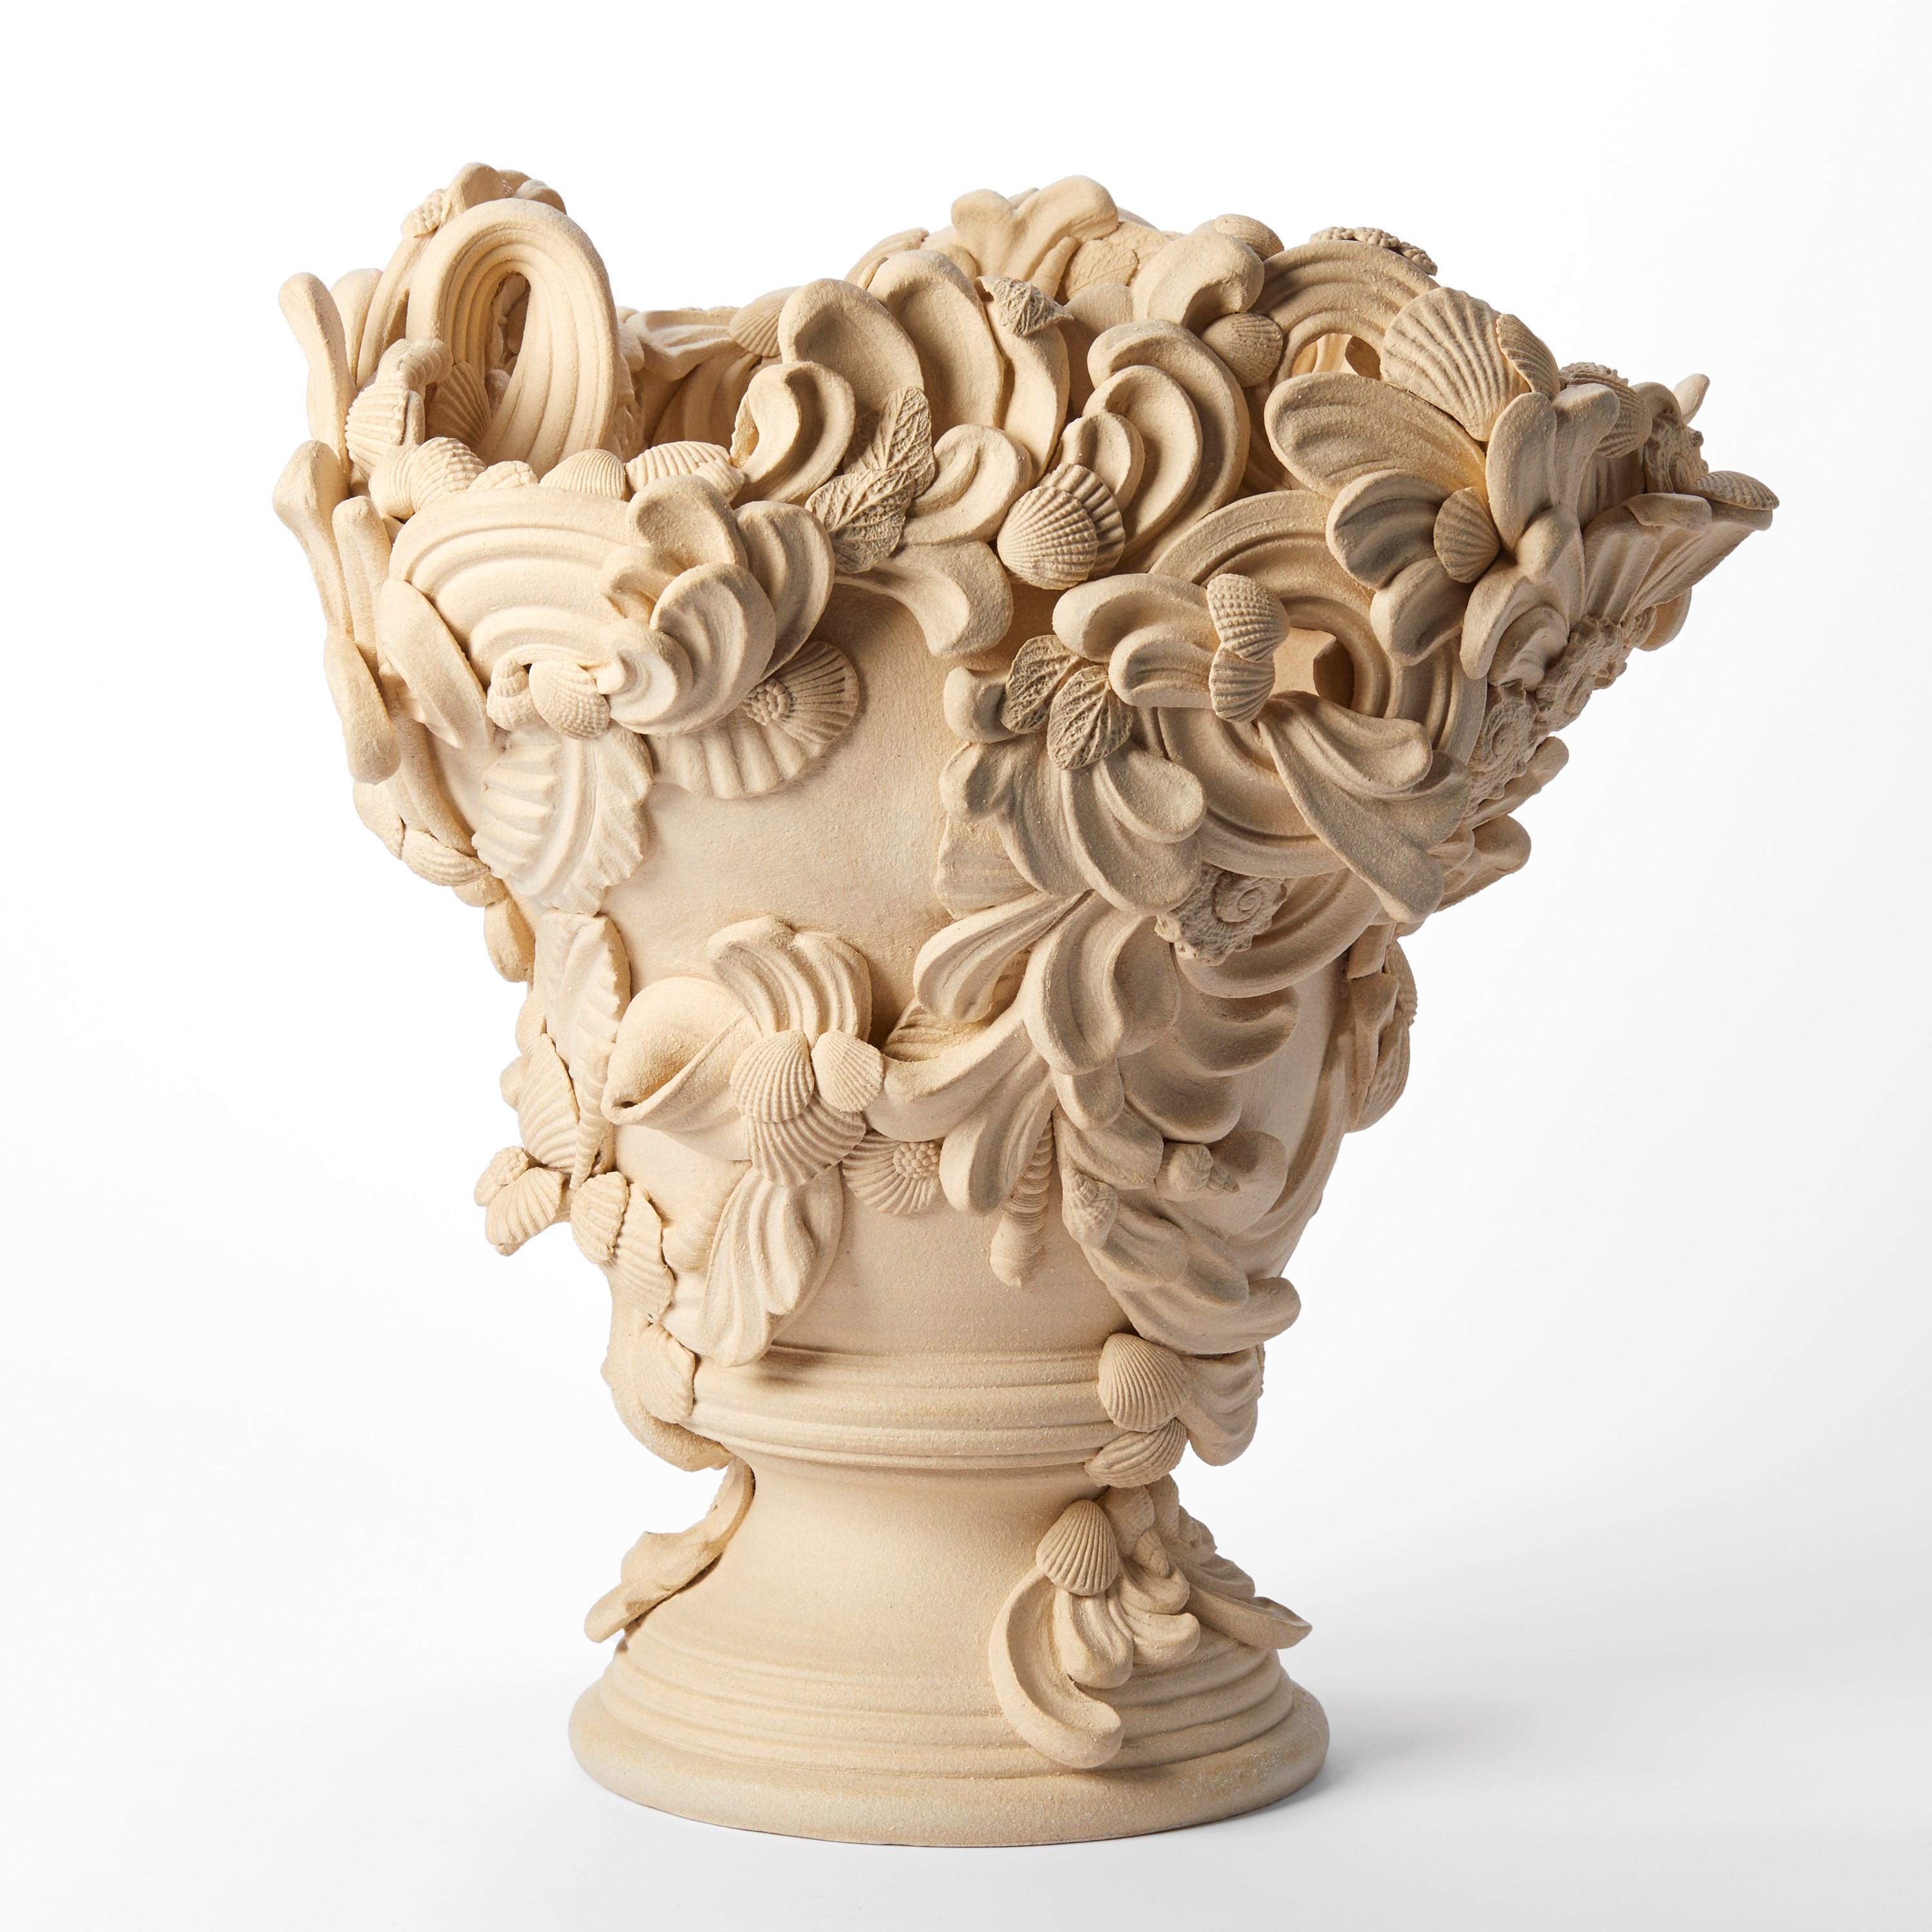 'Überfluss II'  ist eine einzigartige Keramikskulptur der britischen Künstlerin Jo Taylor.

Taylor lässt sich von hochdekorativen architektonischen Elementen wie verzierten Stuckdecken, Schmiedeeisen und behauenem Stein inspirieren. Da sie in der